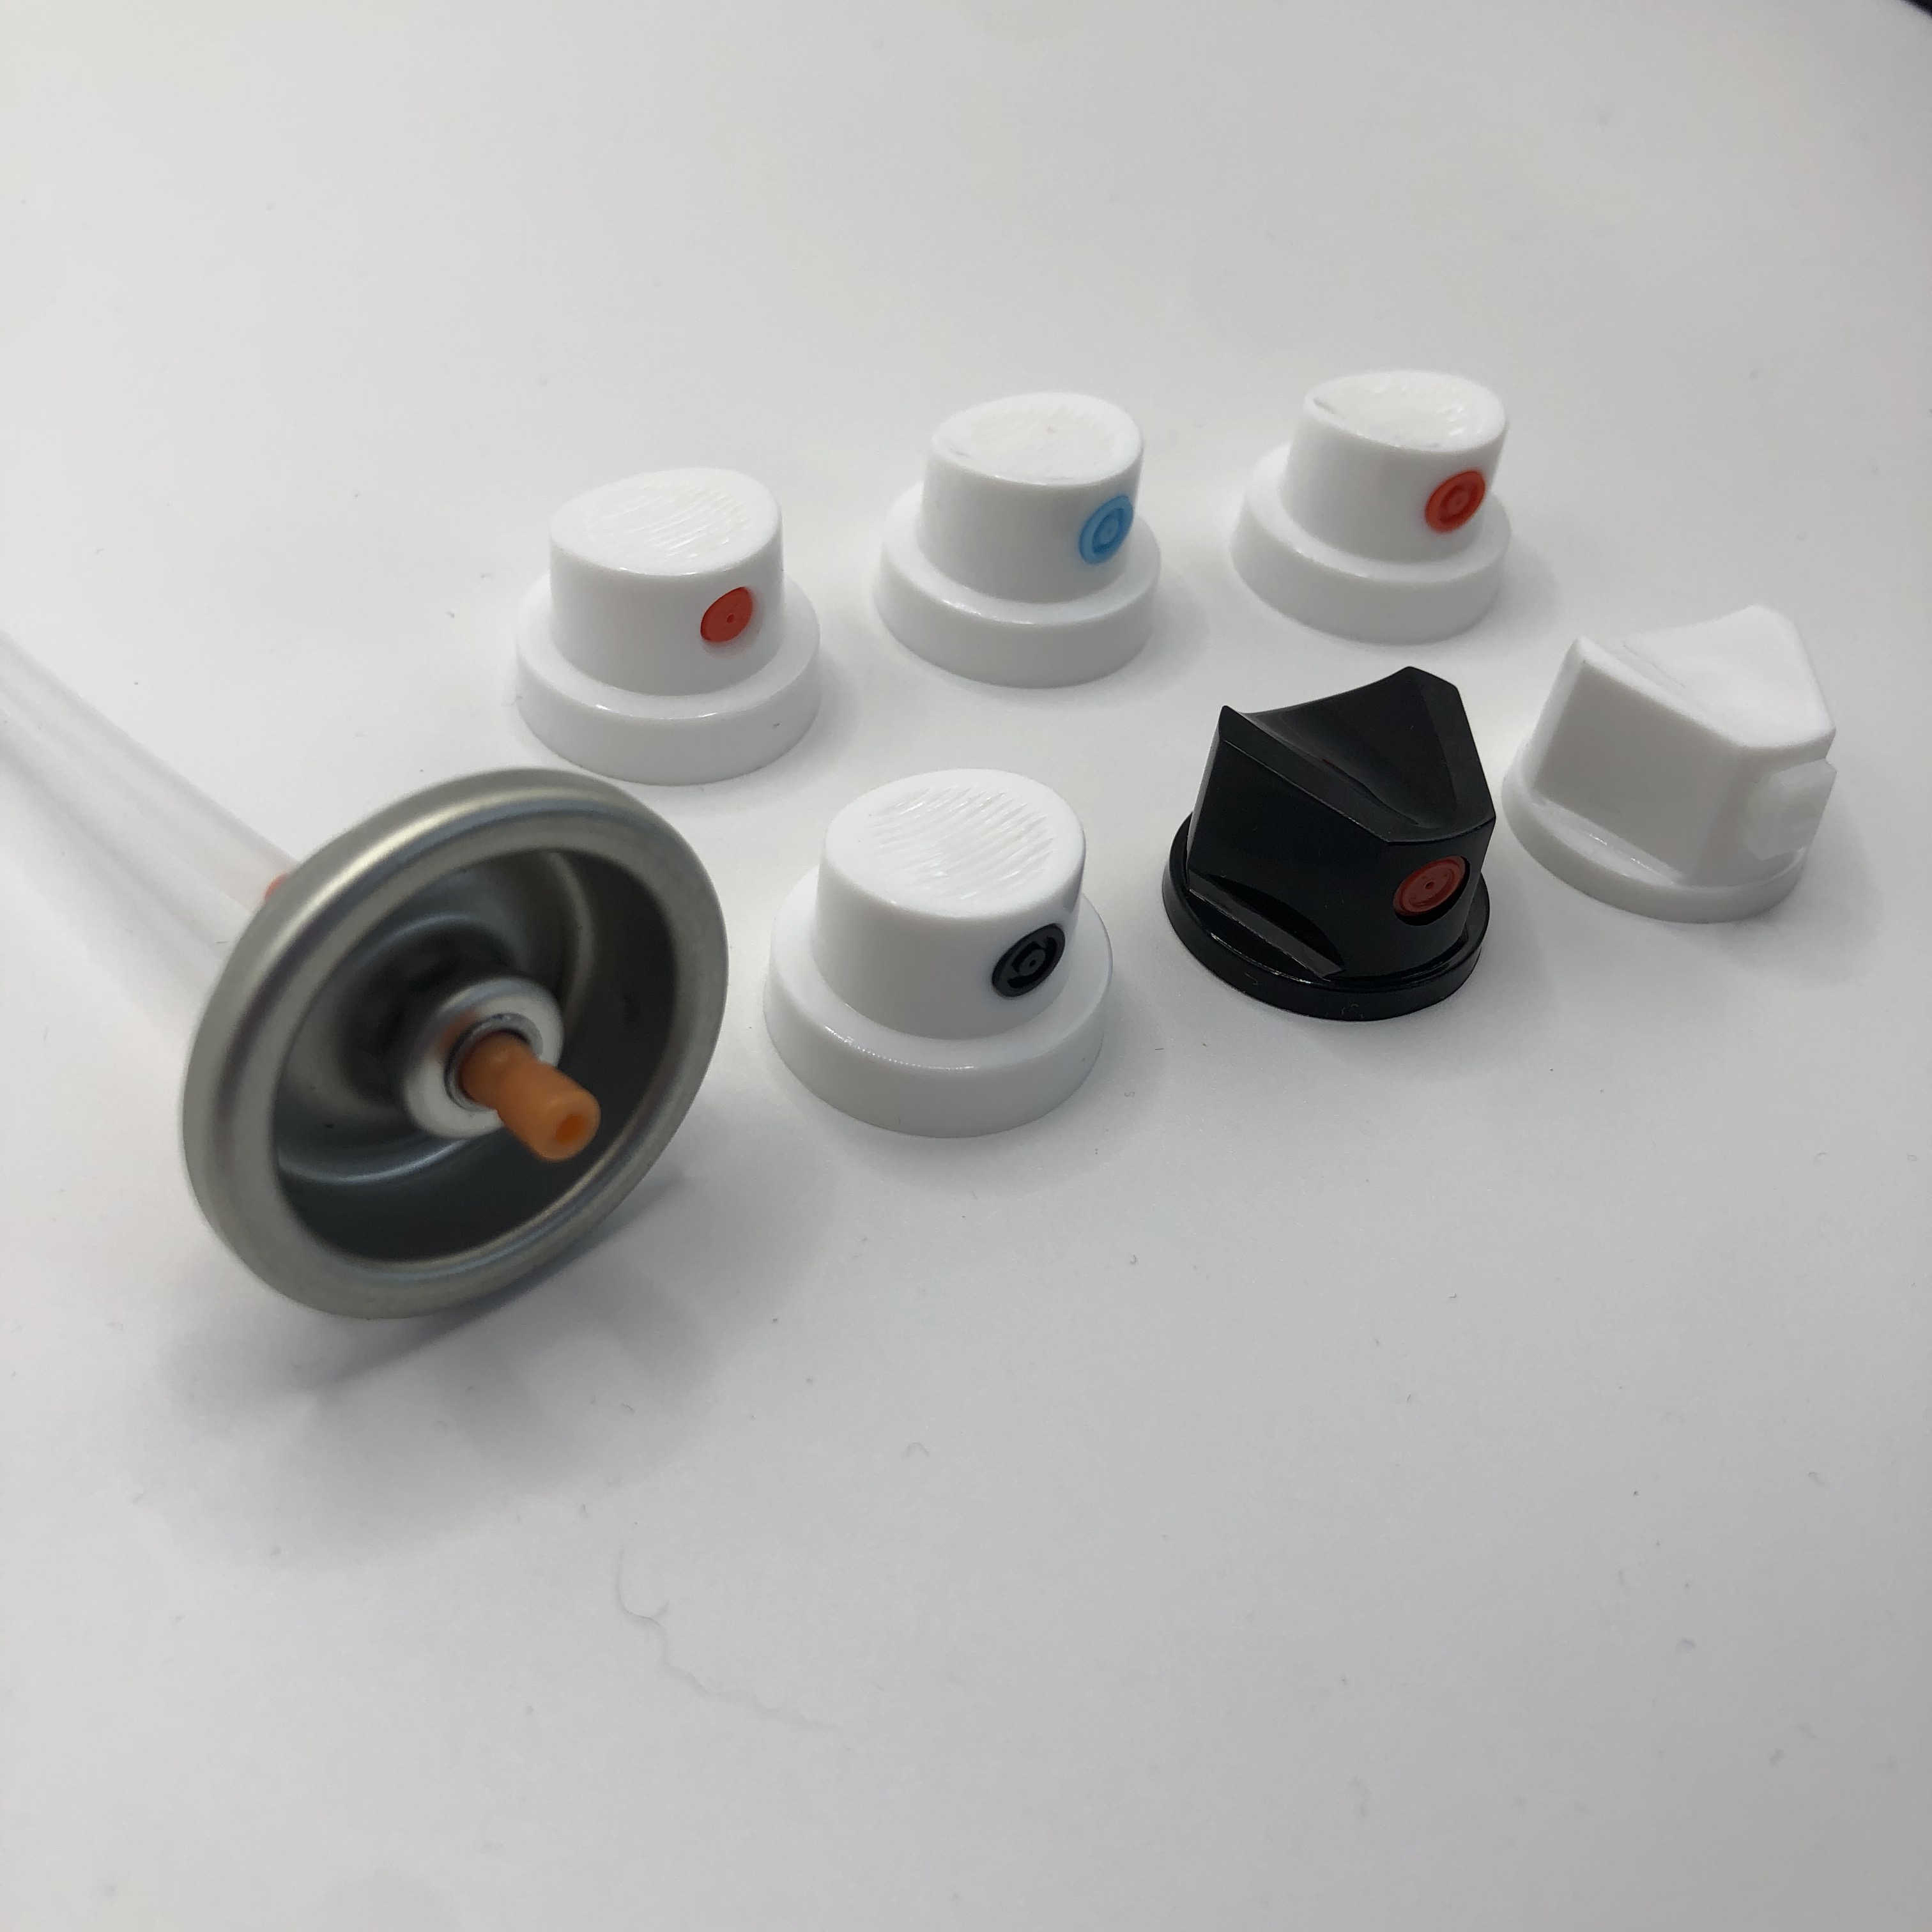 Válvula de pulverización de pintura versátil para recubrimientos industriales: flujo ajustable, resistente a la abrasión